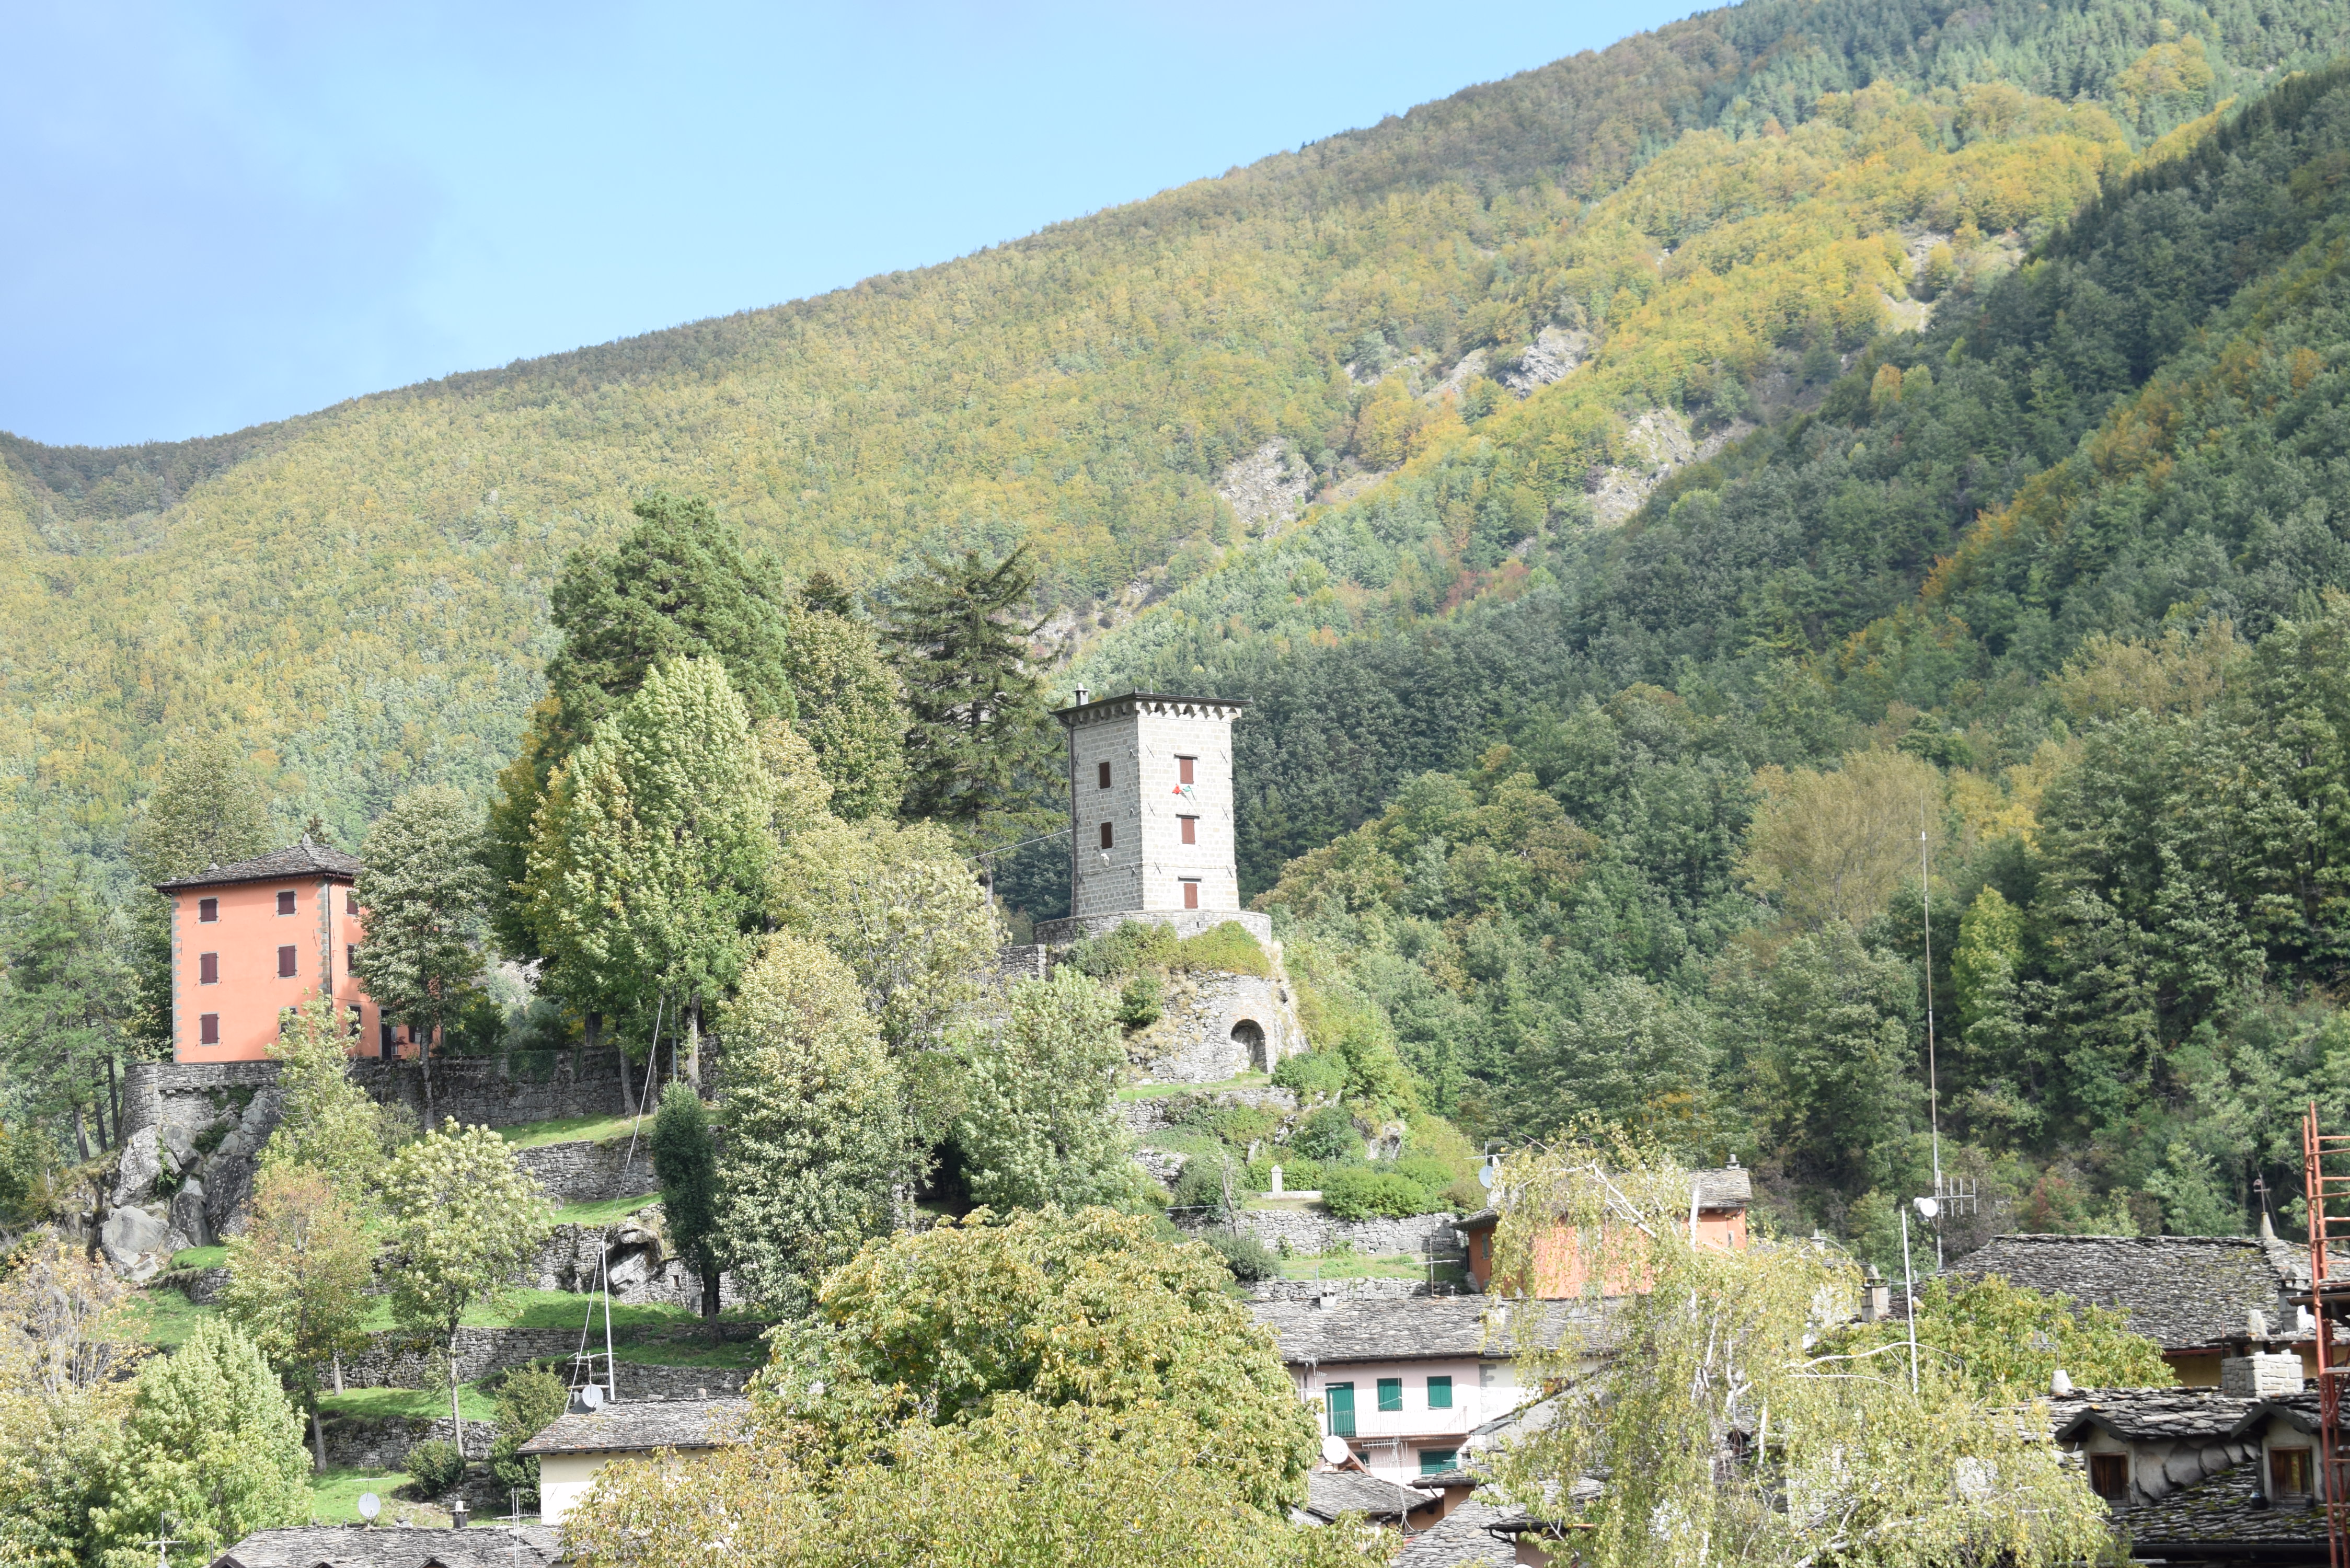 Castello o Rocca di Fiumalbo (torre) - Fiumalbo (MO)  (sec. XIX, terzo quarto)